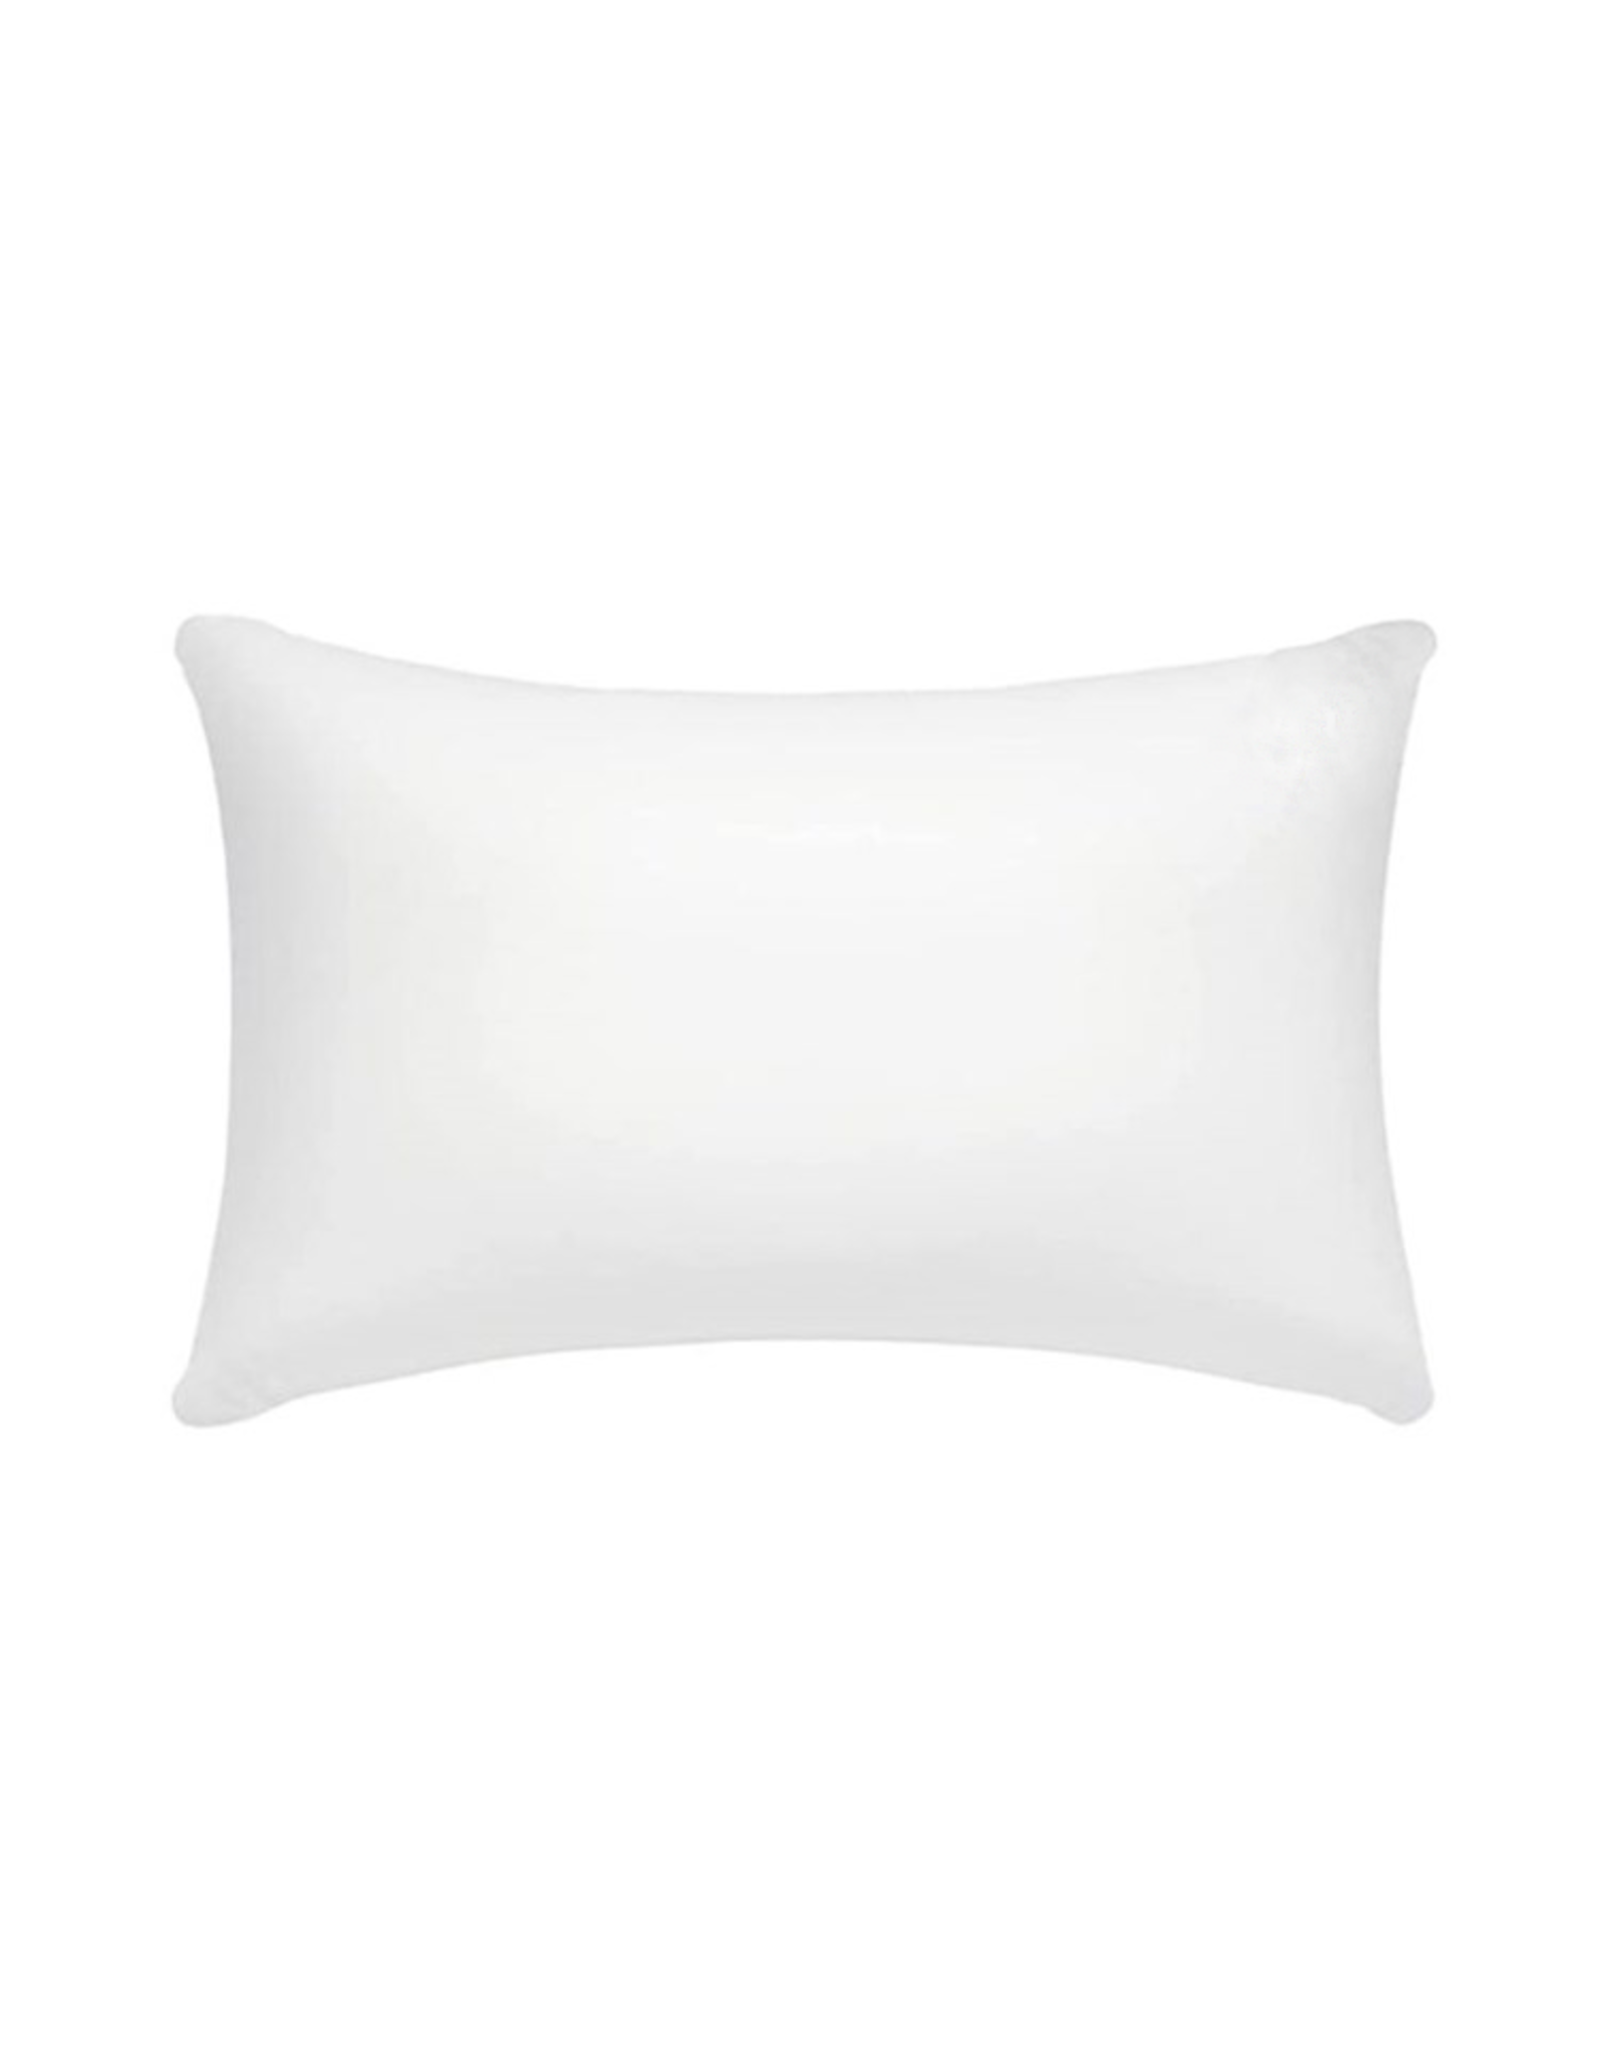 Tide | Hill Pillow Insert | 12x20 Inch Pillow Form